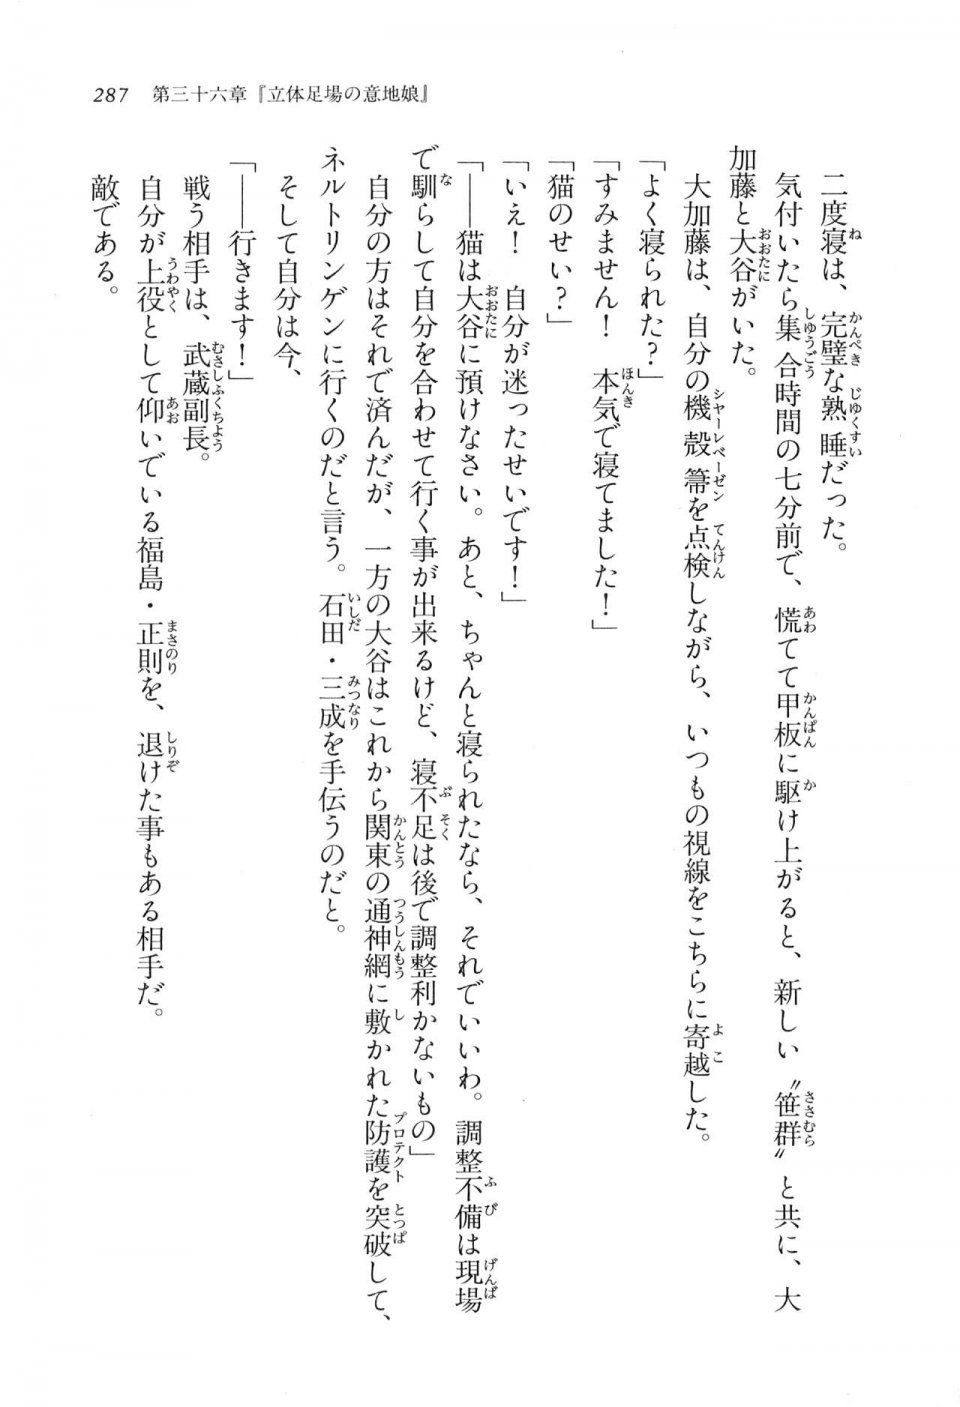 Kyoukai Senjou no Horizon LN Vol 17(7B) - Photo #287